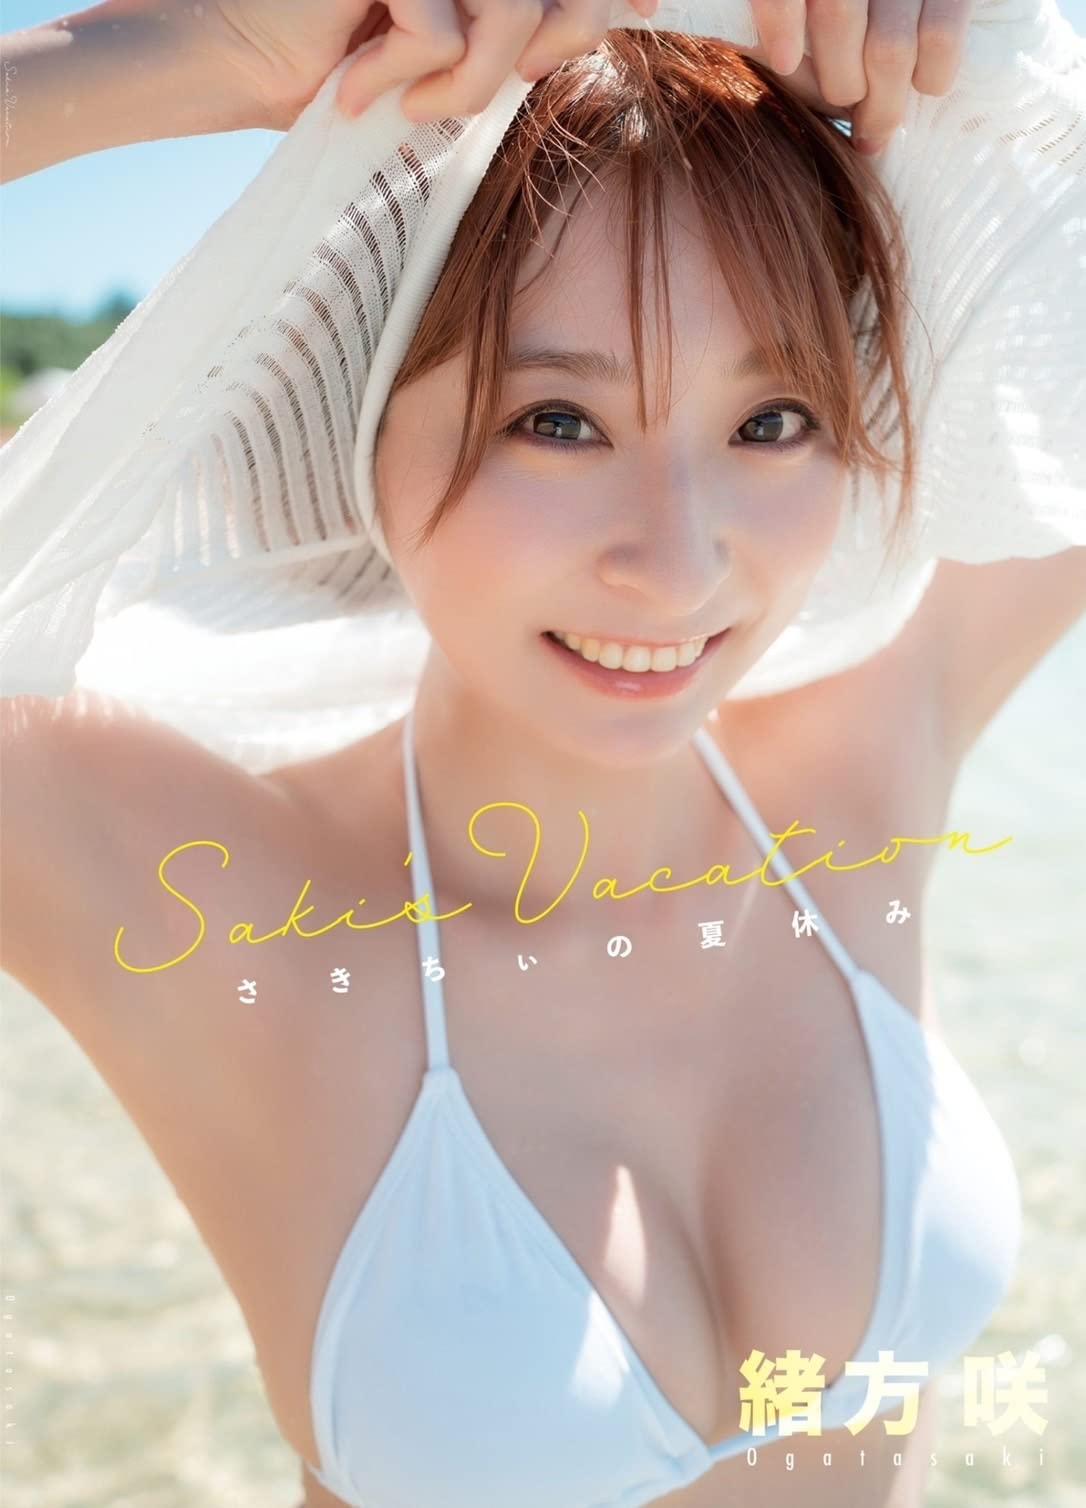 「Saki's vacation さきちぃの夏休み」緒方咲グラビア写真集のサンプル画像